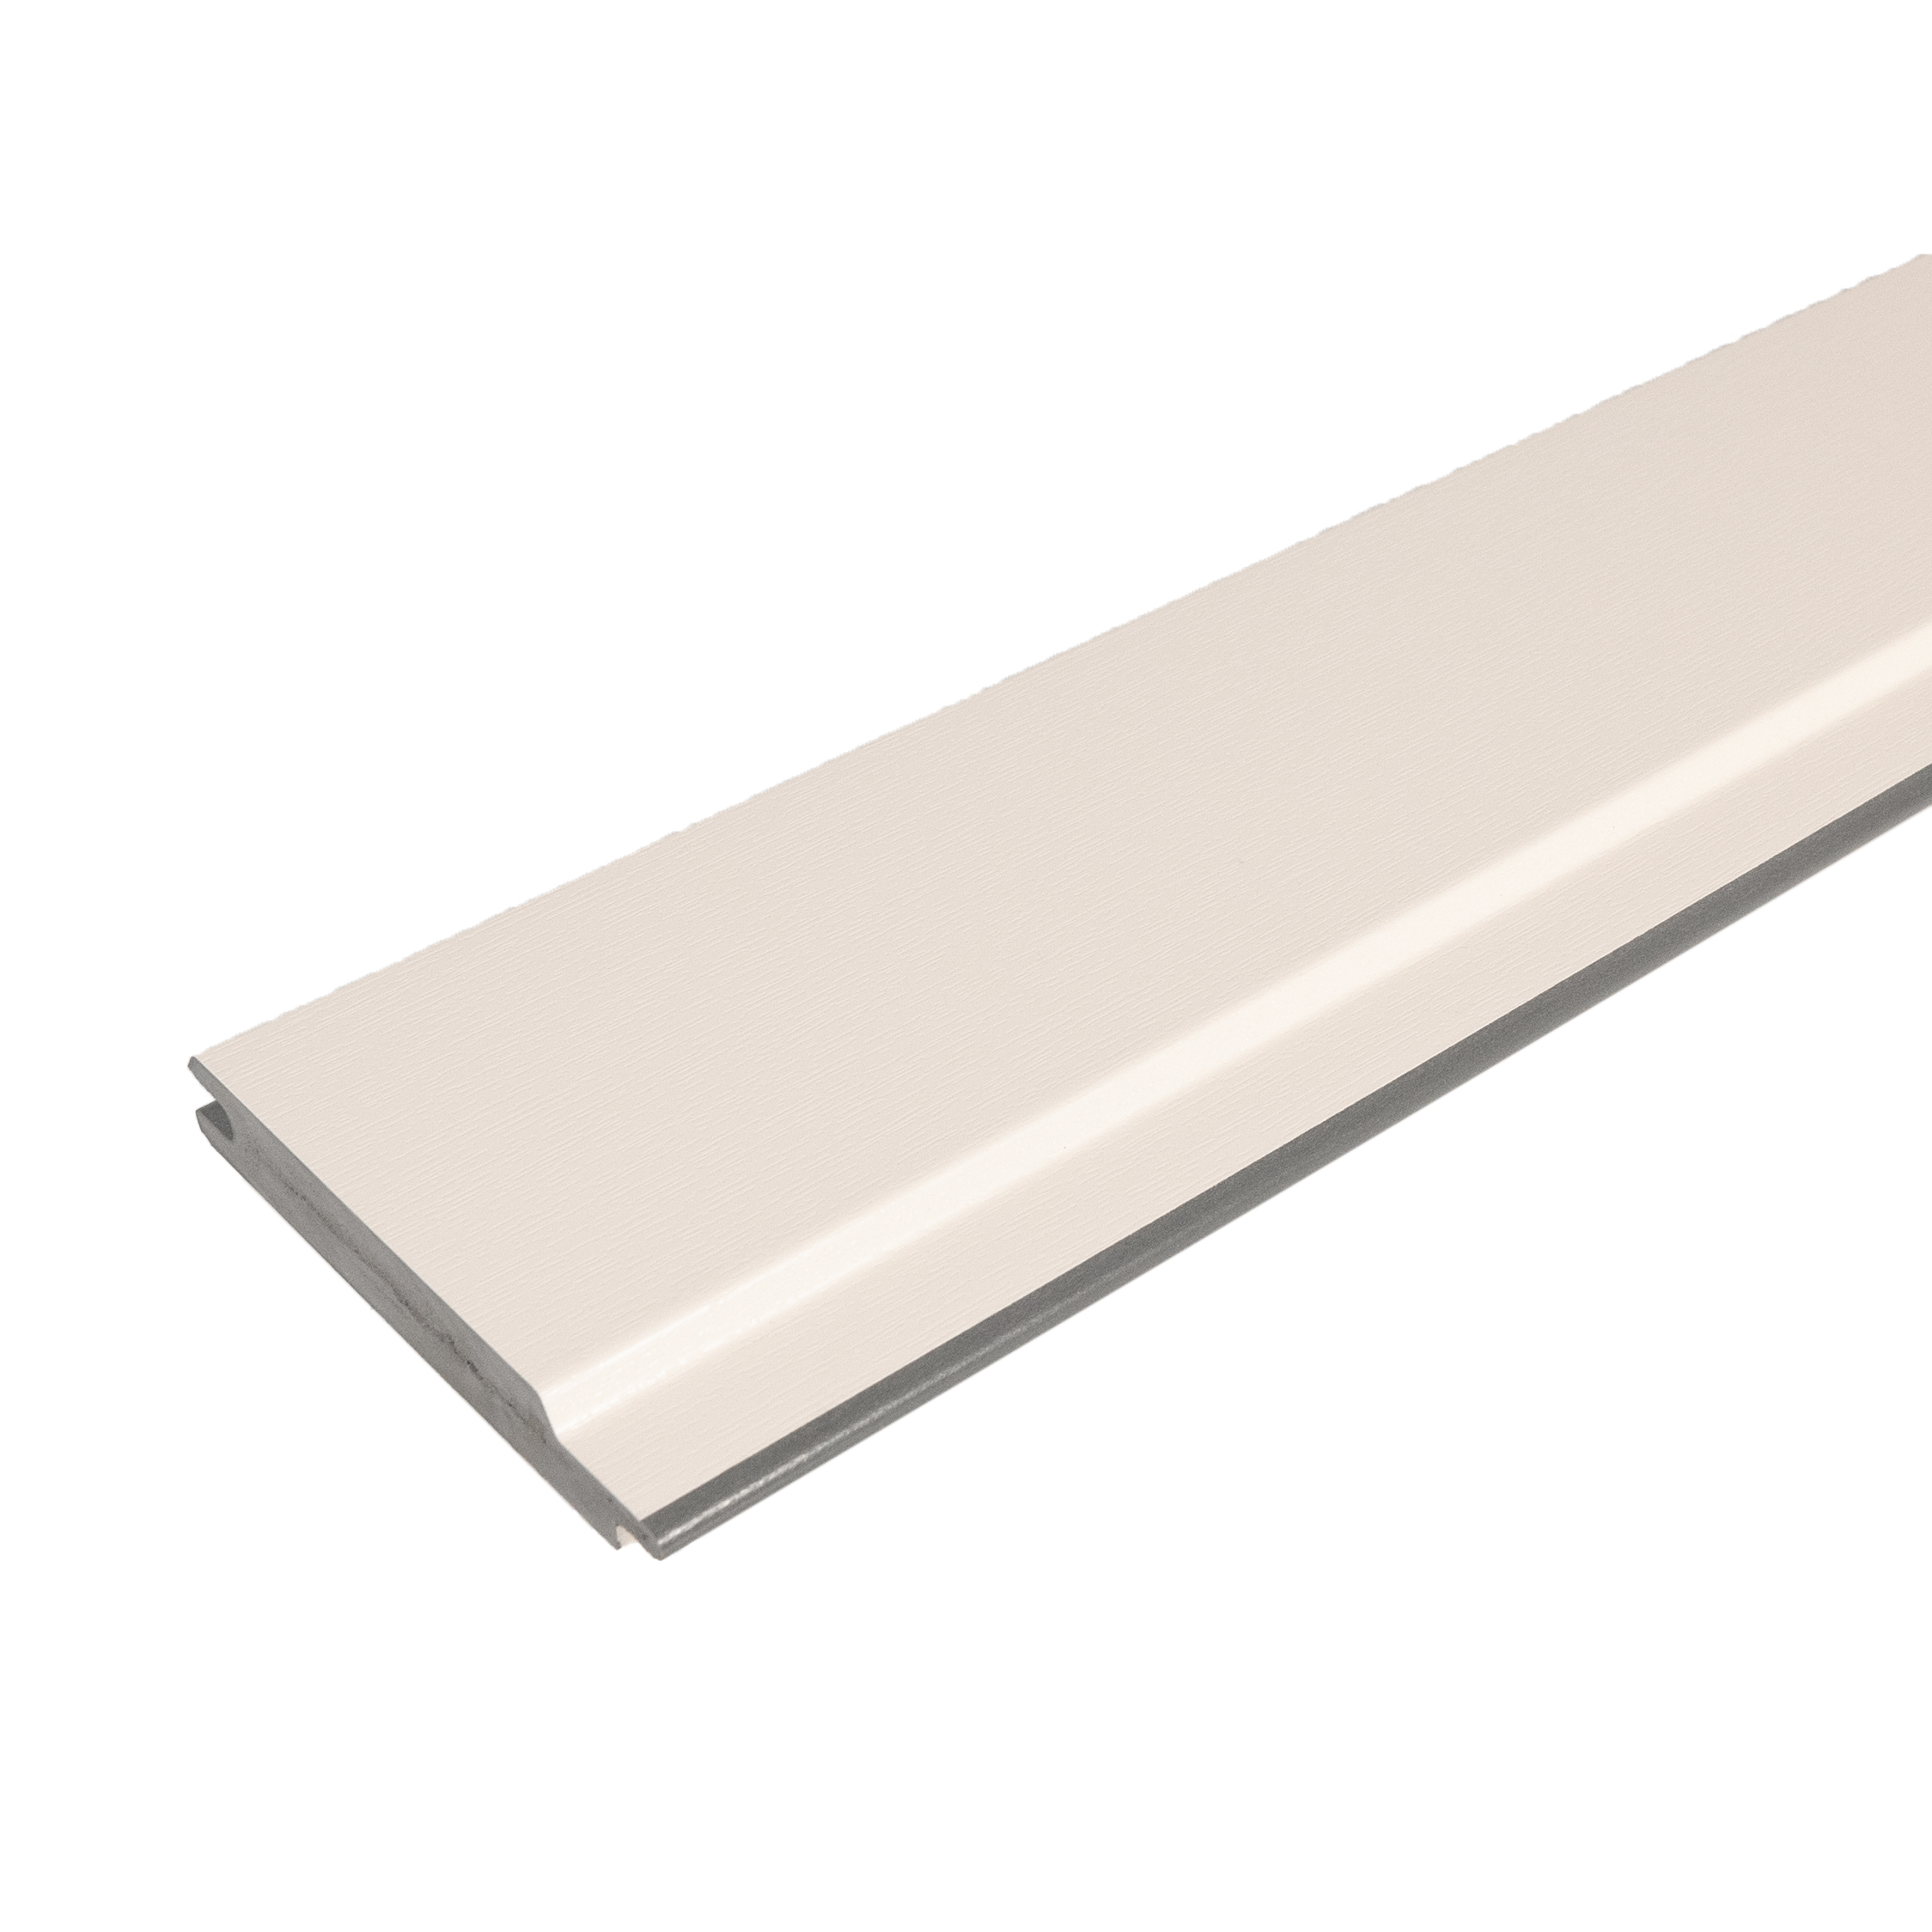 Kömapan® Kunststoffpaneele für Tore und Zäune | Cremeweiß ähnl. RAL 9001